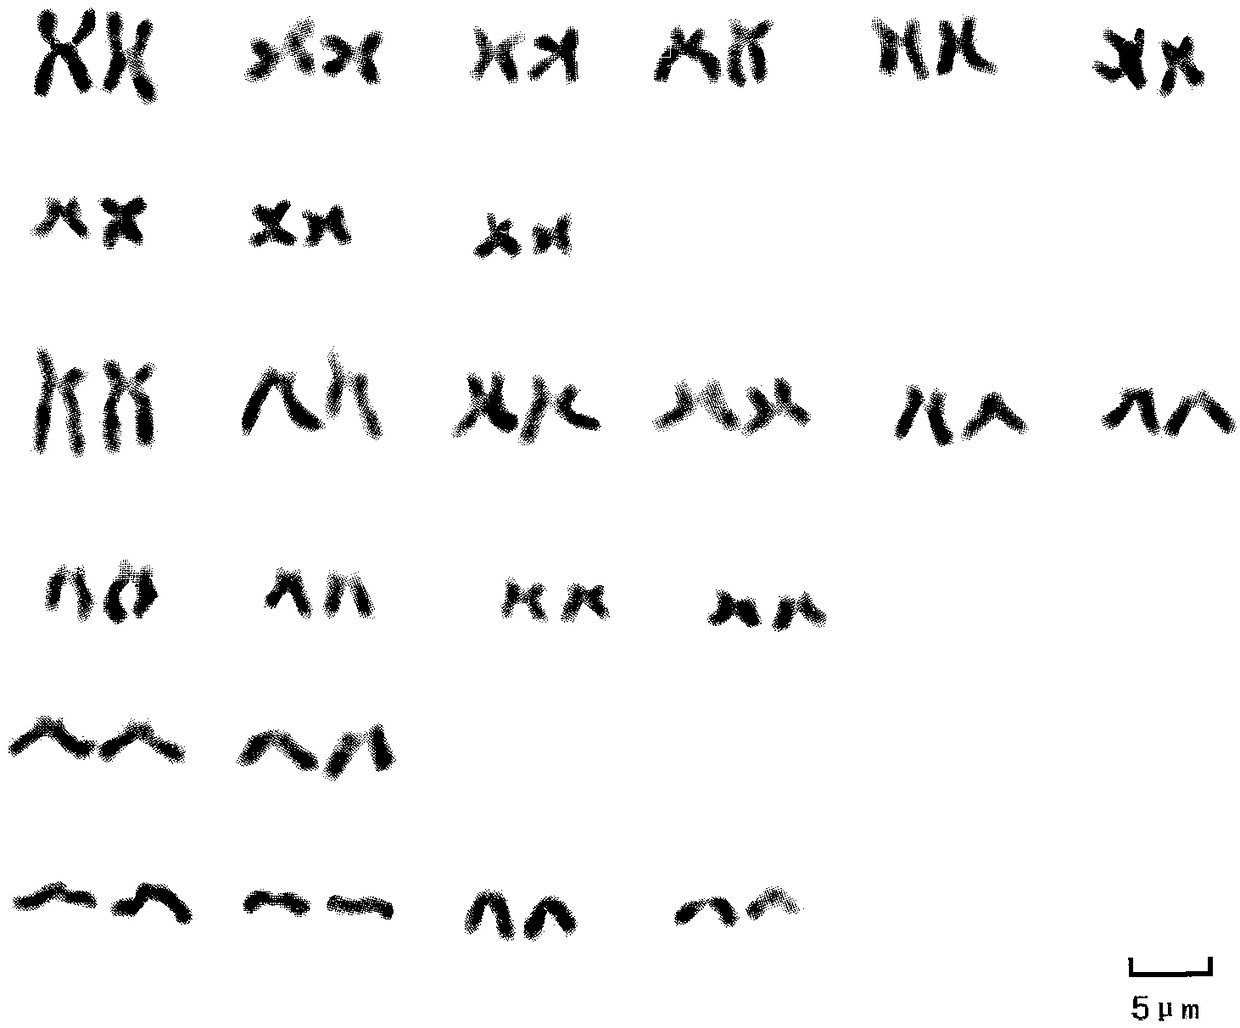 Method for preparing Leuciscus sp. chromosomes